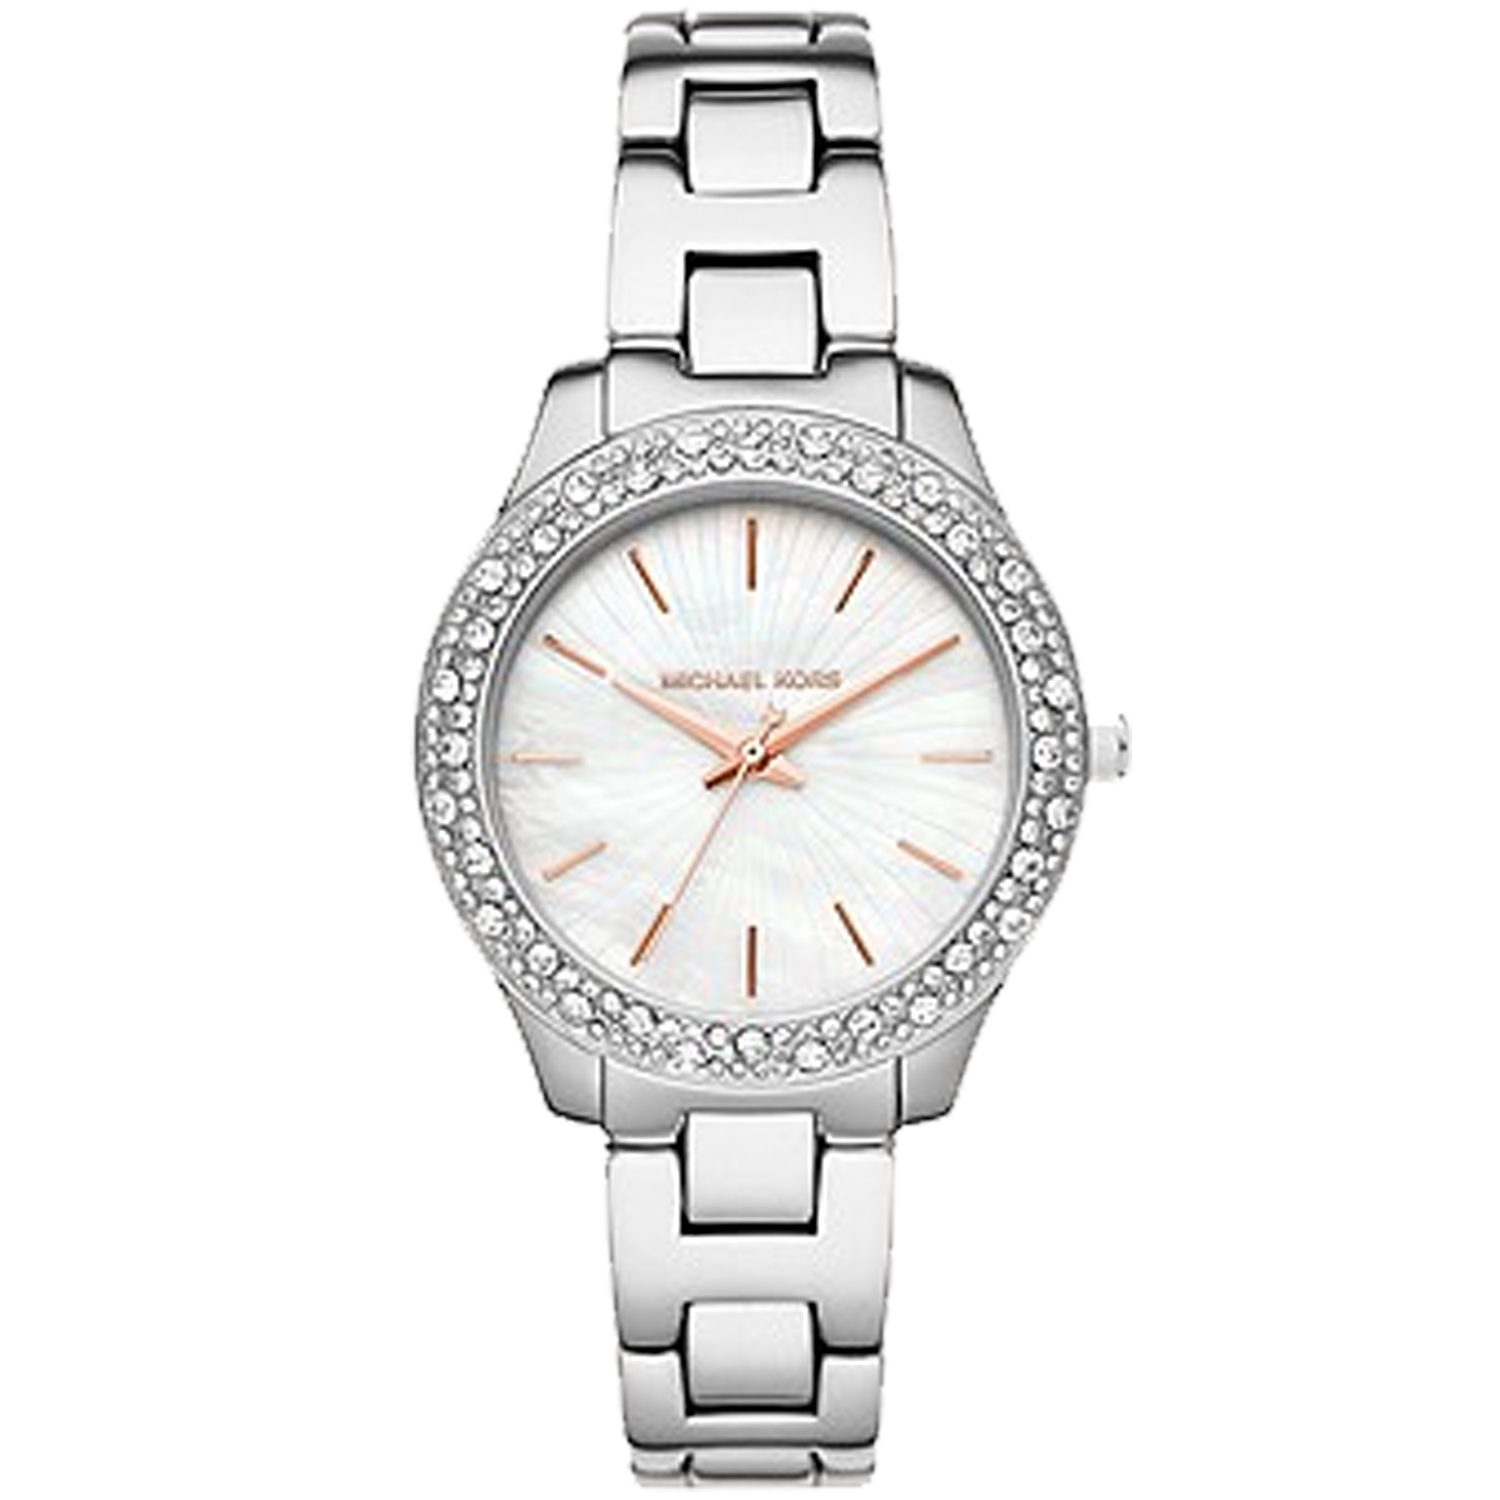 Michael Kors Women's Liliane White Dial Watch - MK4556